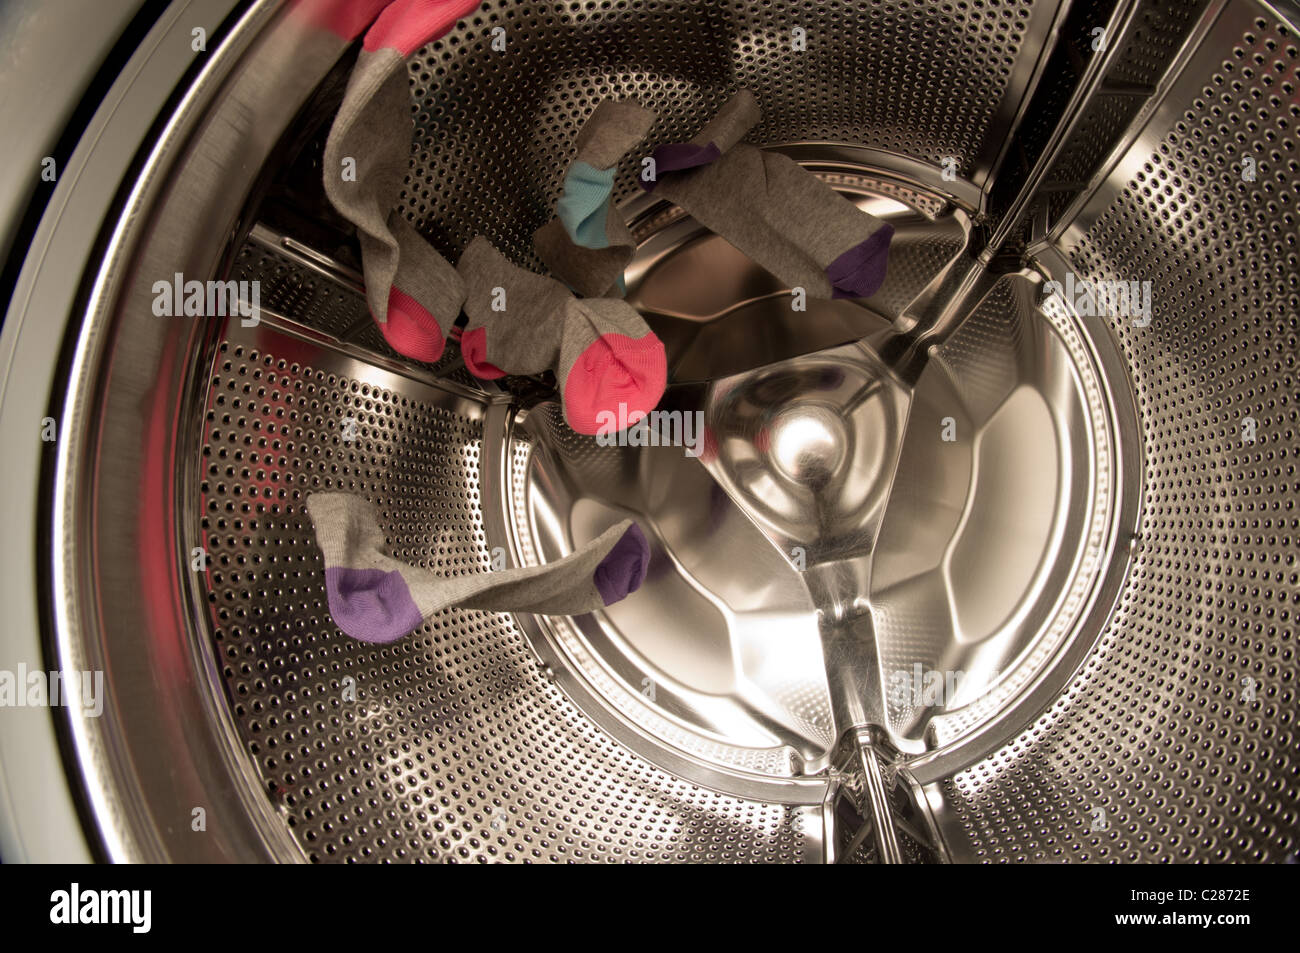 Socken in der Waschmaschine Stockfotografie - Alamy